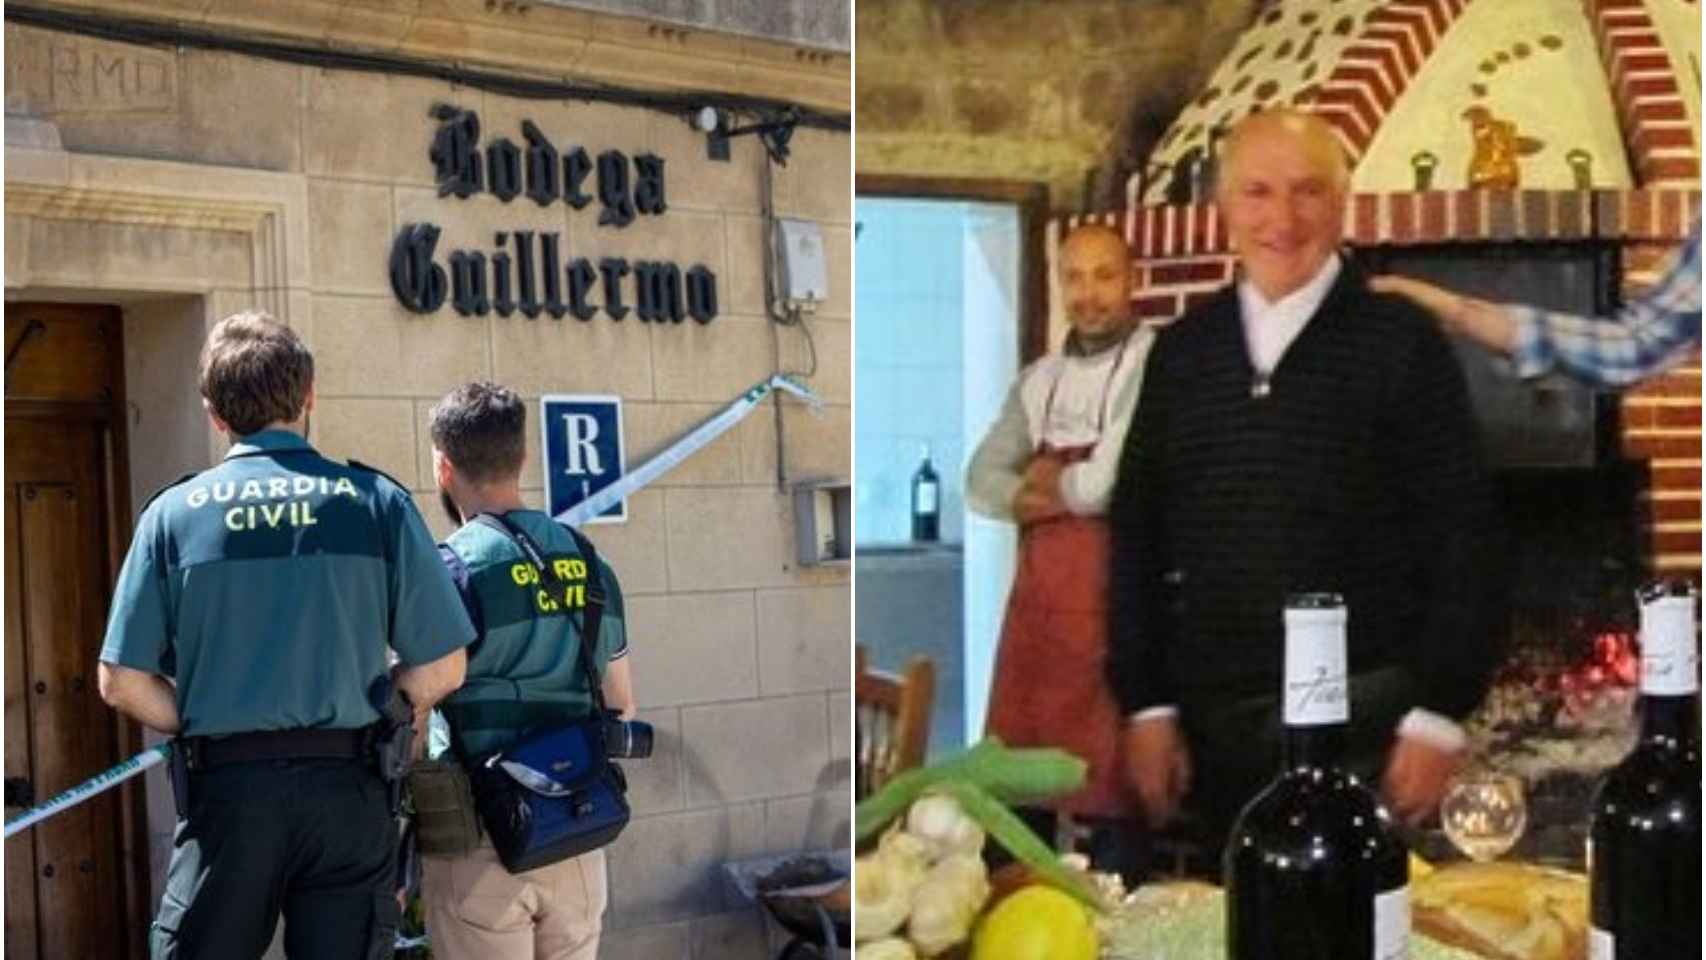 A la izquierda, la puerta de las Bodegas Guillermo. A la derecha, una fotografía de Guillermo Castillo en su restaurante.